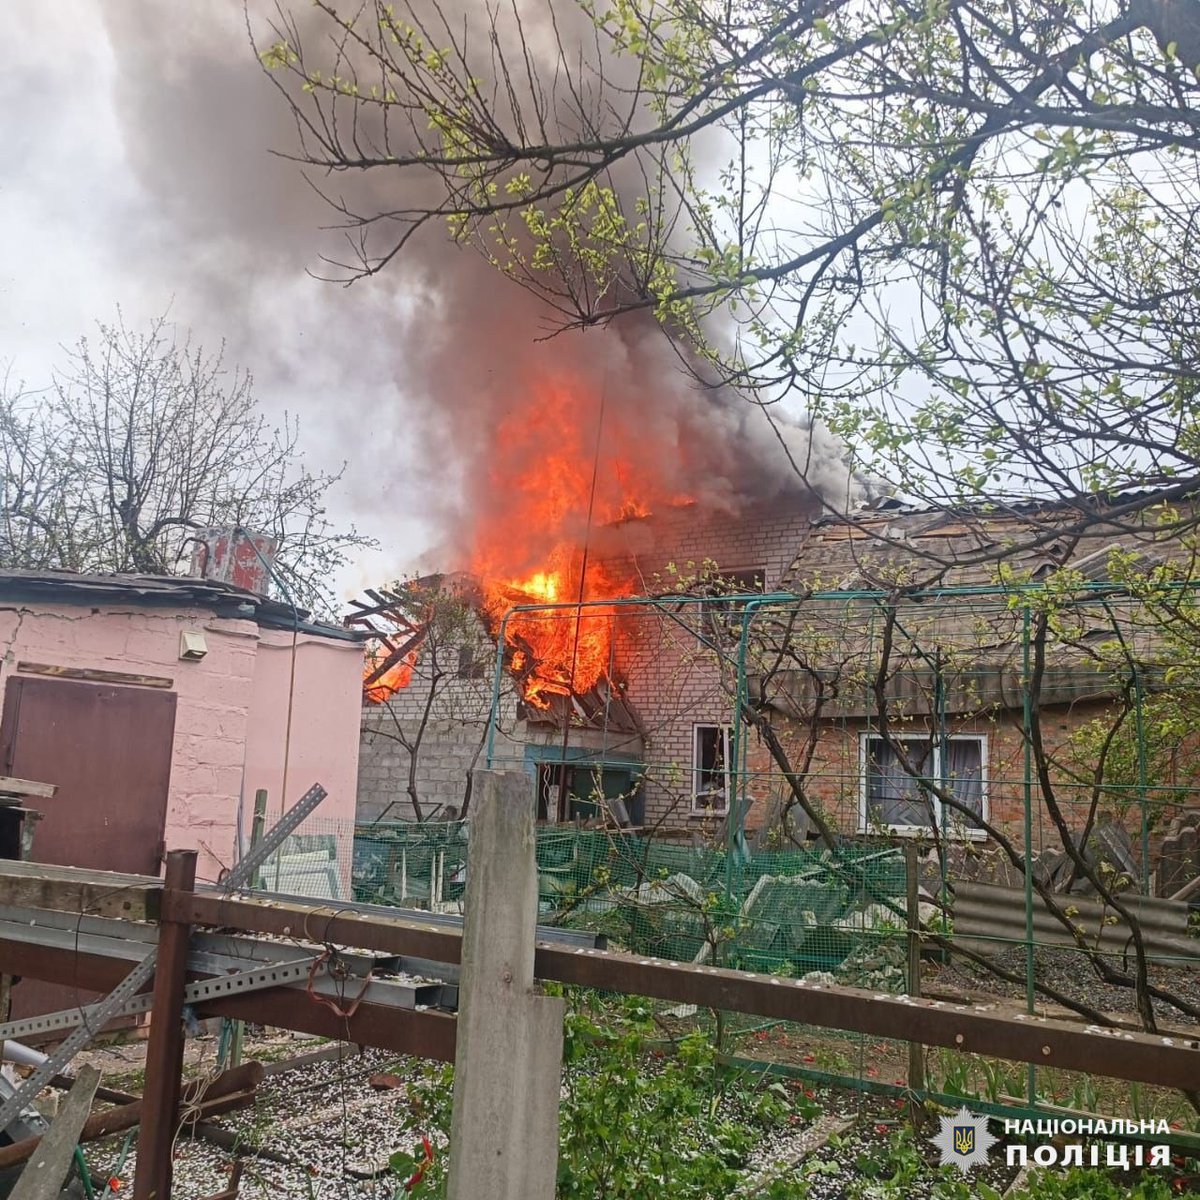 Trois enfants et une autre personne ont été blessés à la suite d'une frappe aérienne russe à Derhachi, dans la région de Kharkiv